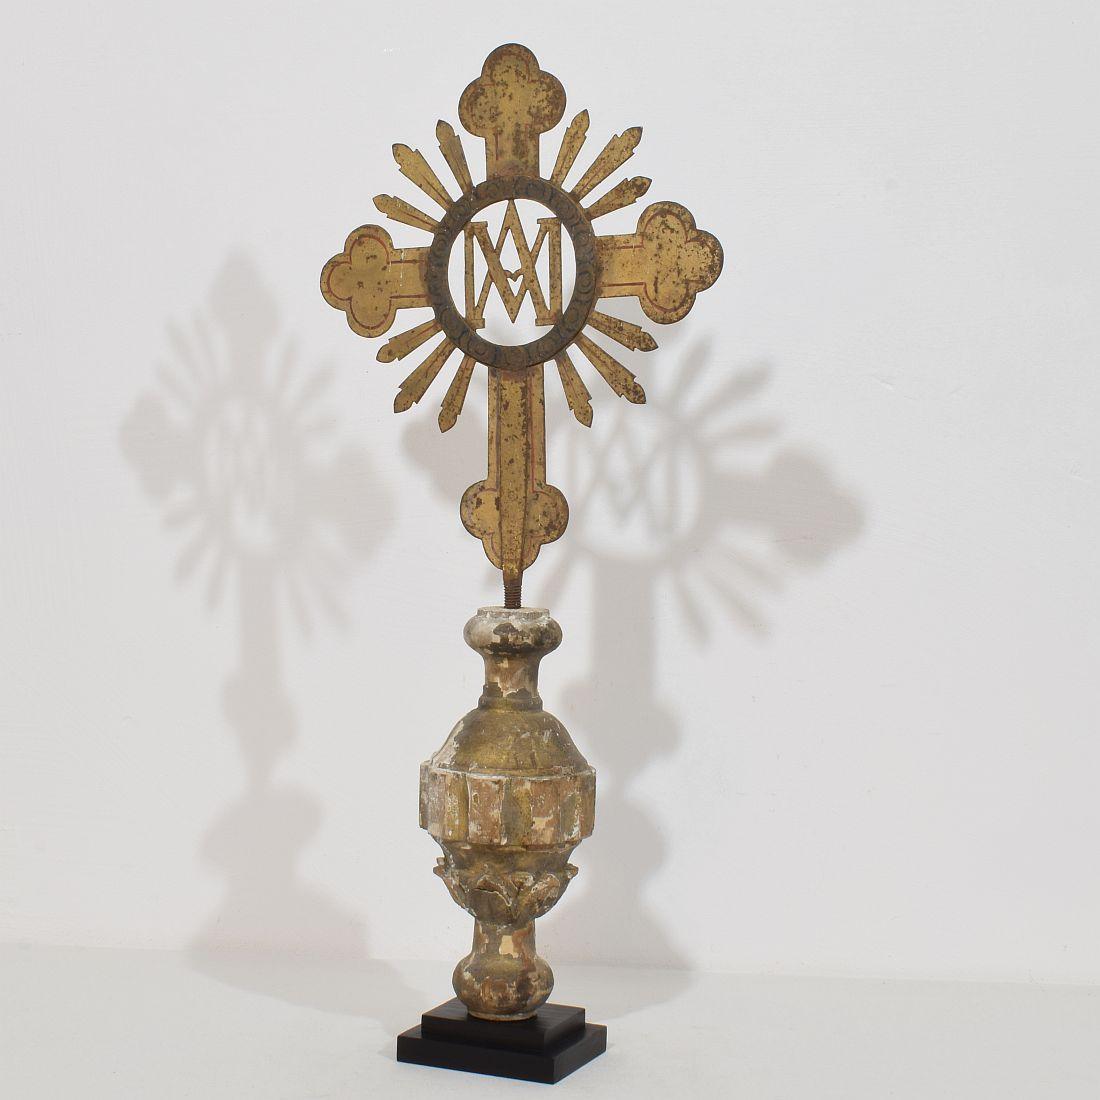 Schönes barockes vergoldetes Prozessionskreuz aus Metall mit einer tollen Patina.
Frankreich um 1750. verwittert und kleine Verluste. 
Die Abmessungen umfassen den Holzsockel.